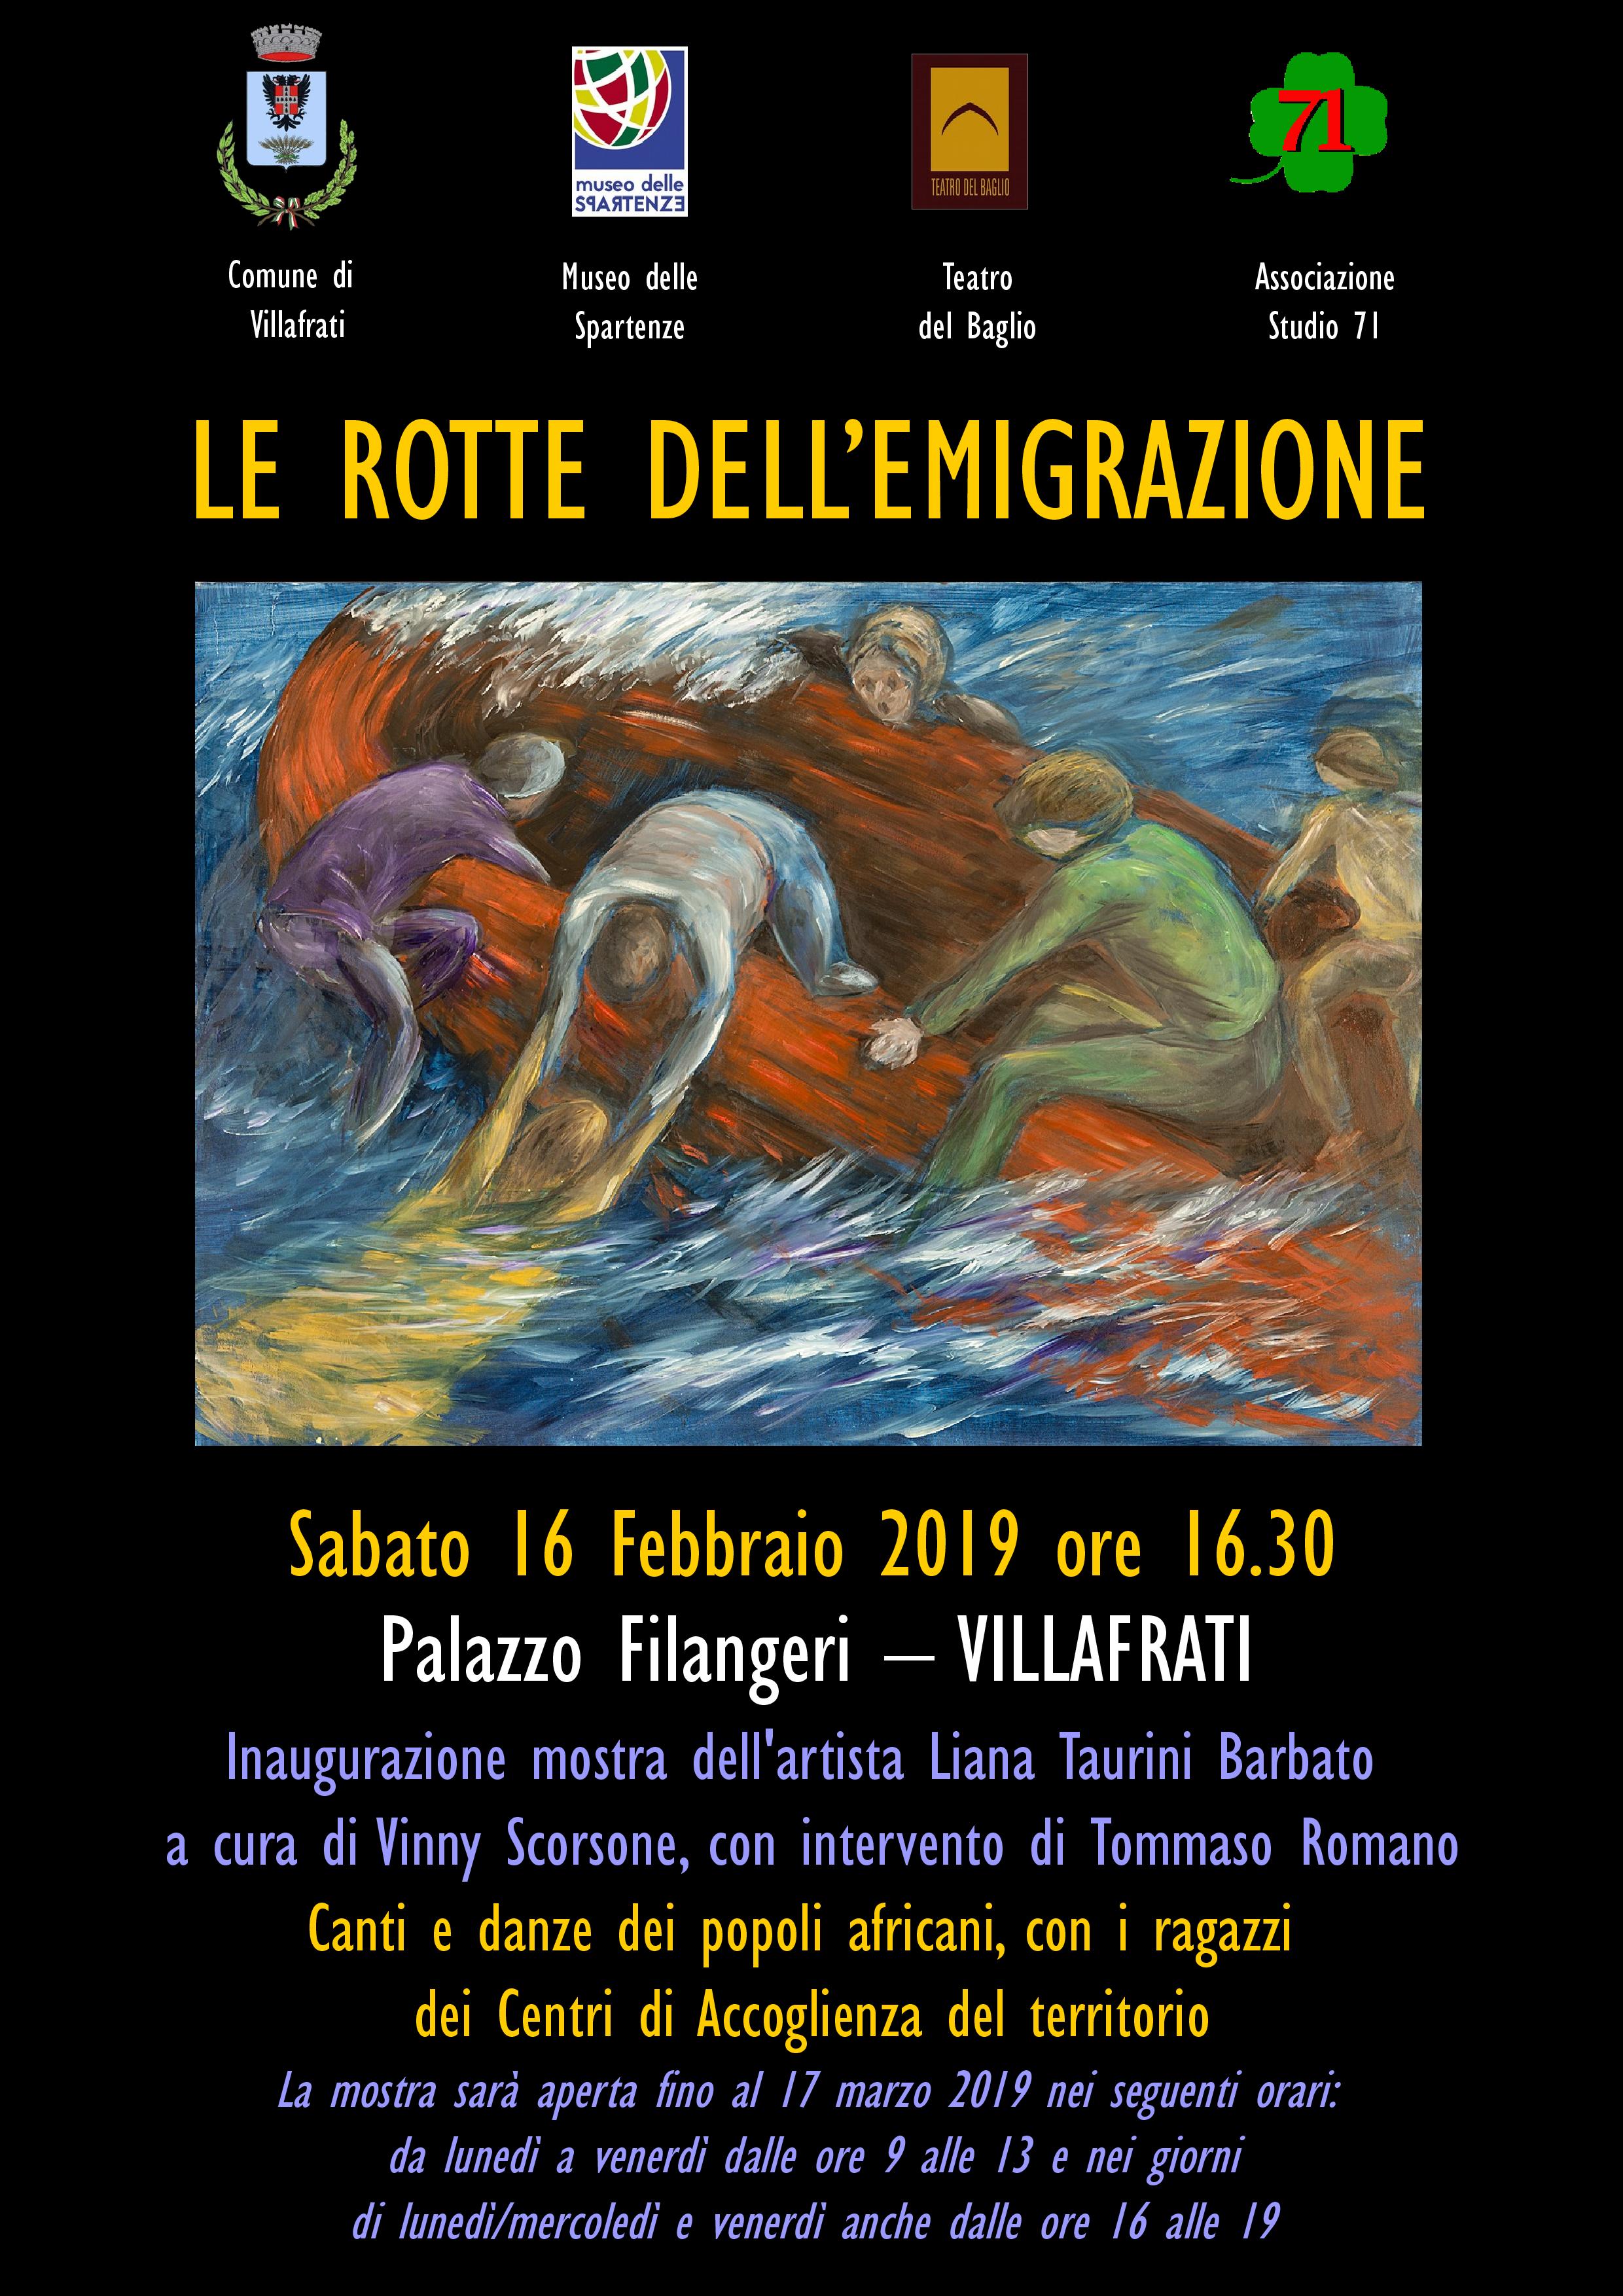 Inaugurazione della Mostra "Le rotte dell’emigrazione" di Liana Taurini Barbato, il 16 Febbraio 2019 a Villafrati 